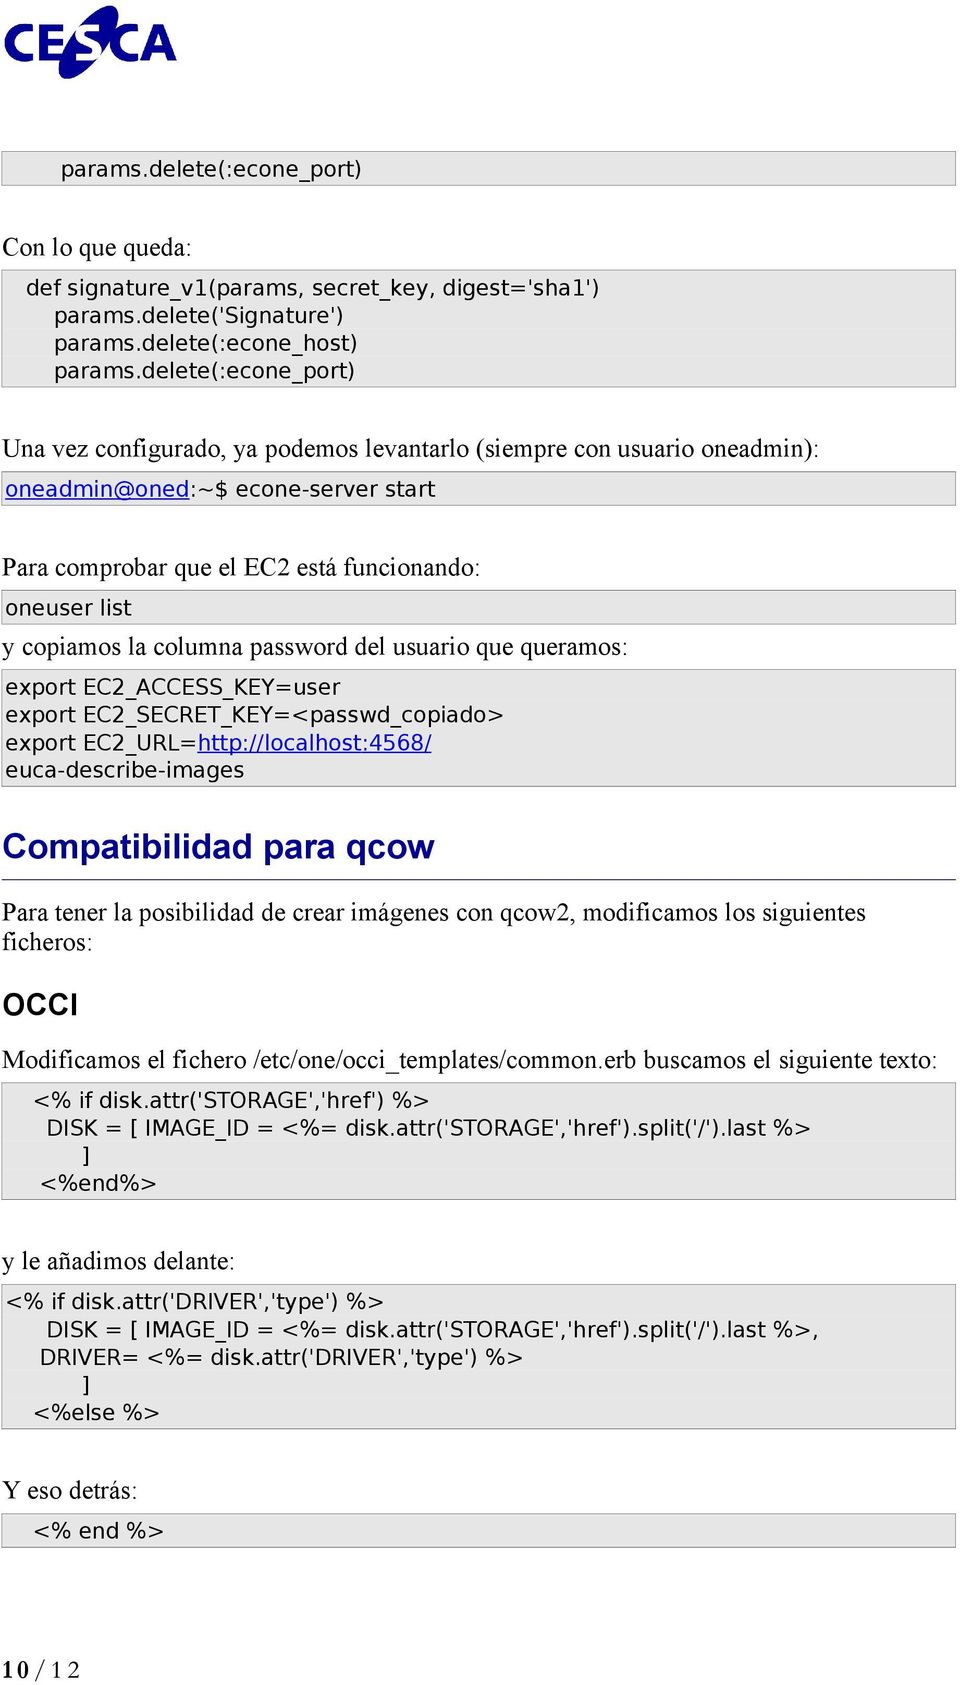 la columna password del usuario que queramos: export EC2_ACCESS_KEY=user export EC2_SECRET_KEY=<passwd_copiado> export EC2_URL=http://localhost:4568/ euca-describe-images Compatibilidad para qcow